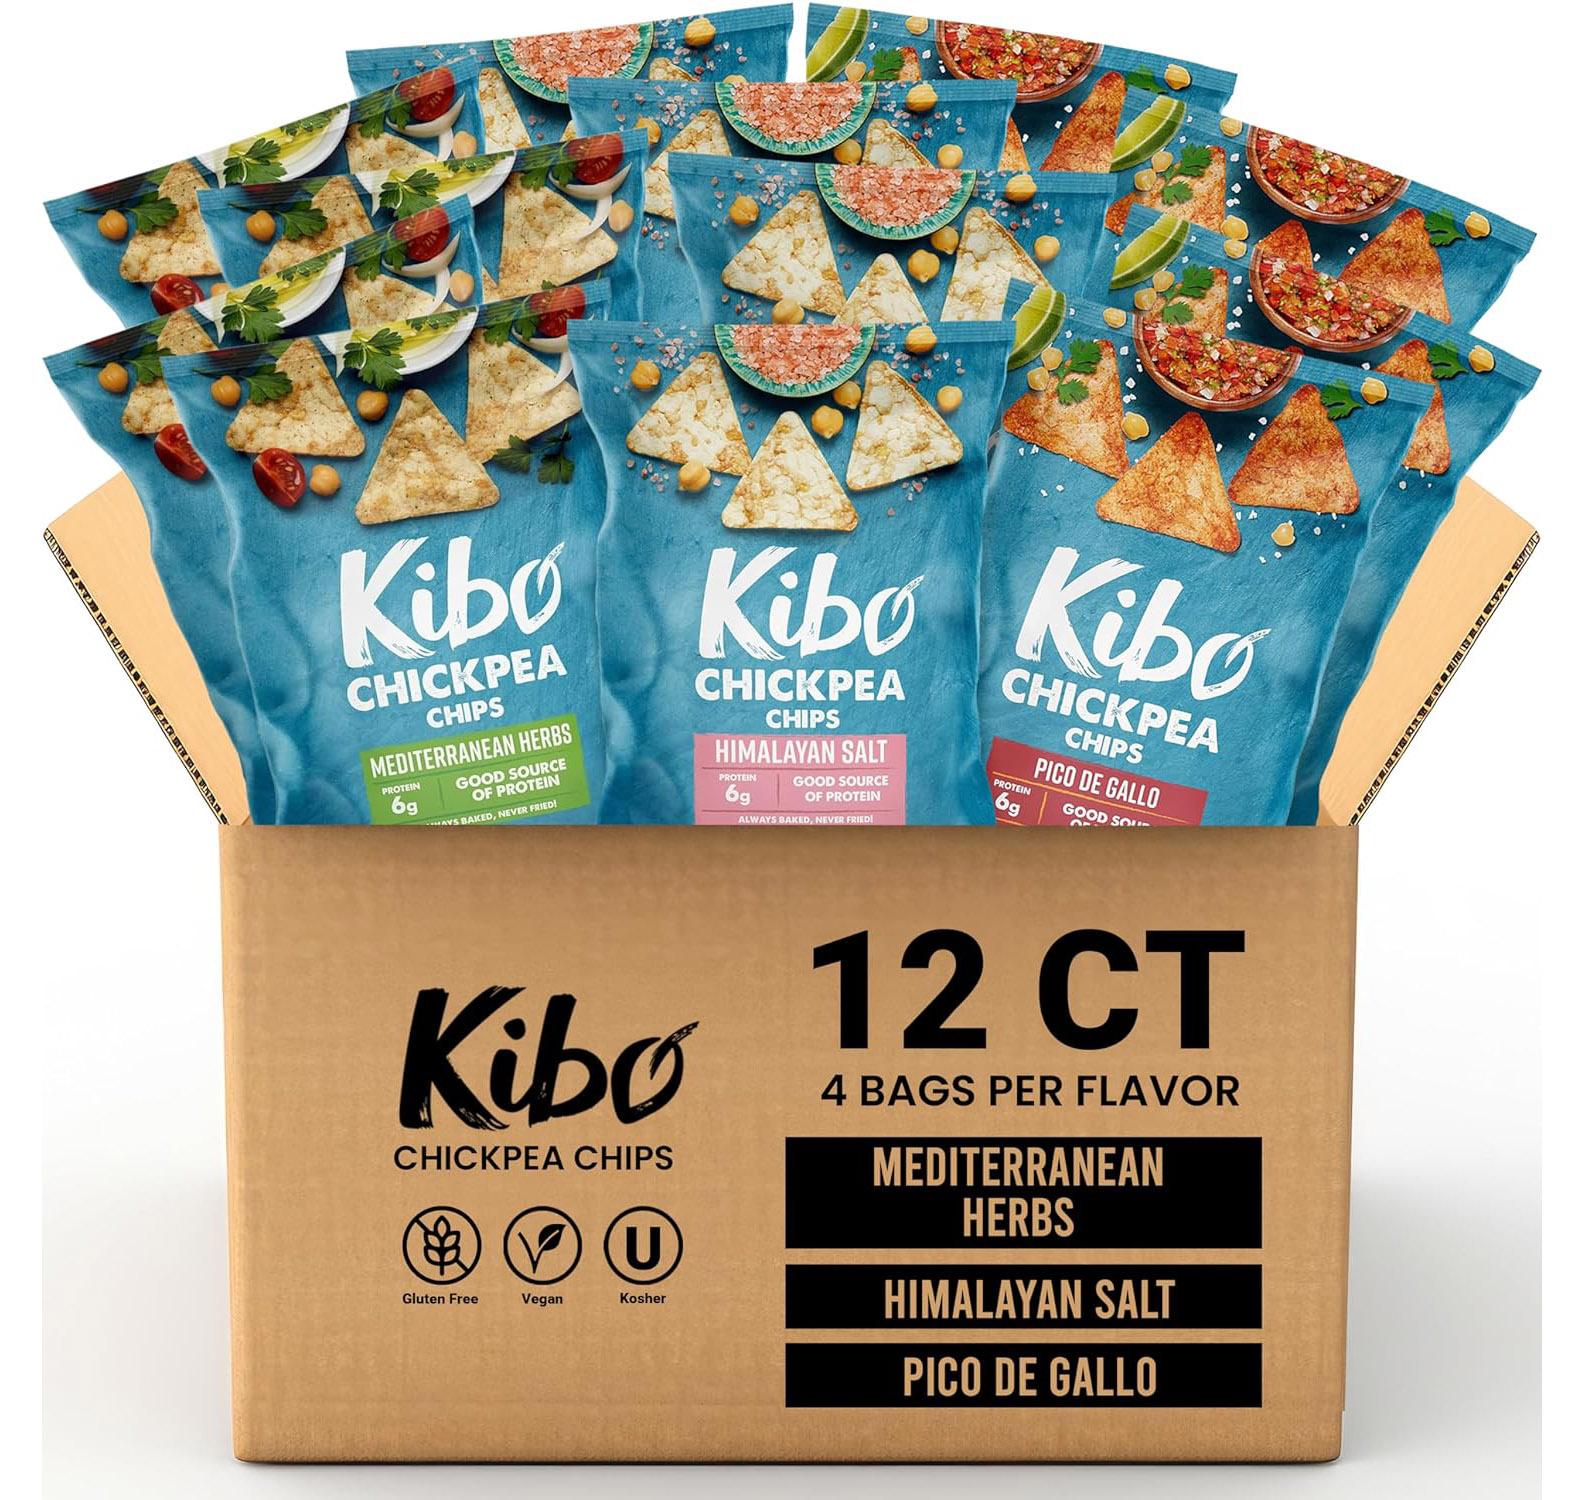 Kibo Chickpea Chips Kosher and Vegan 12 Pack for $8.69